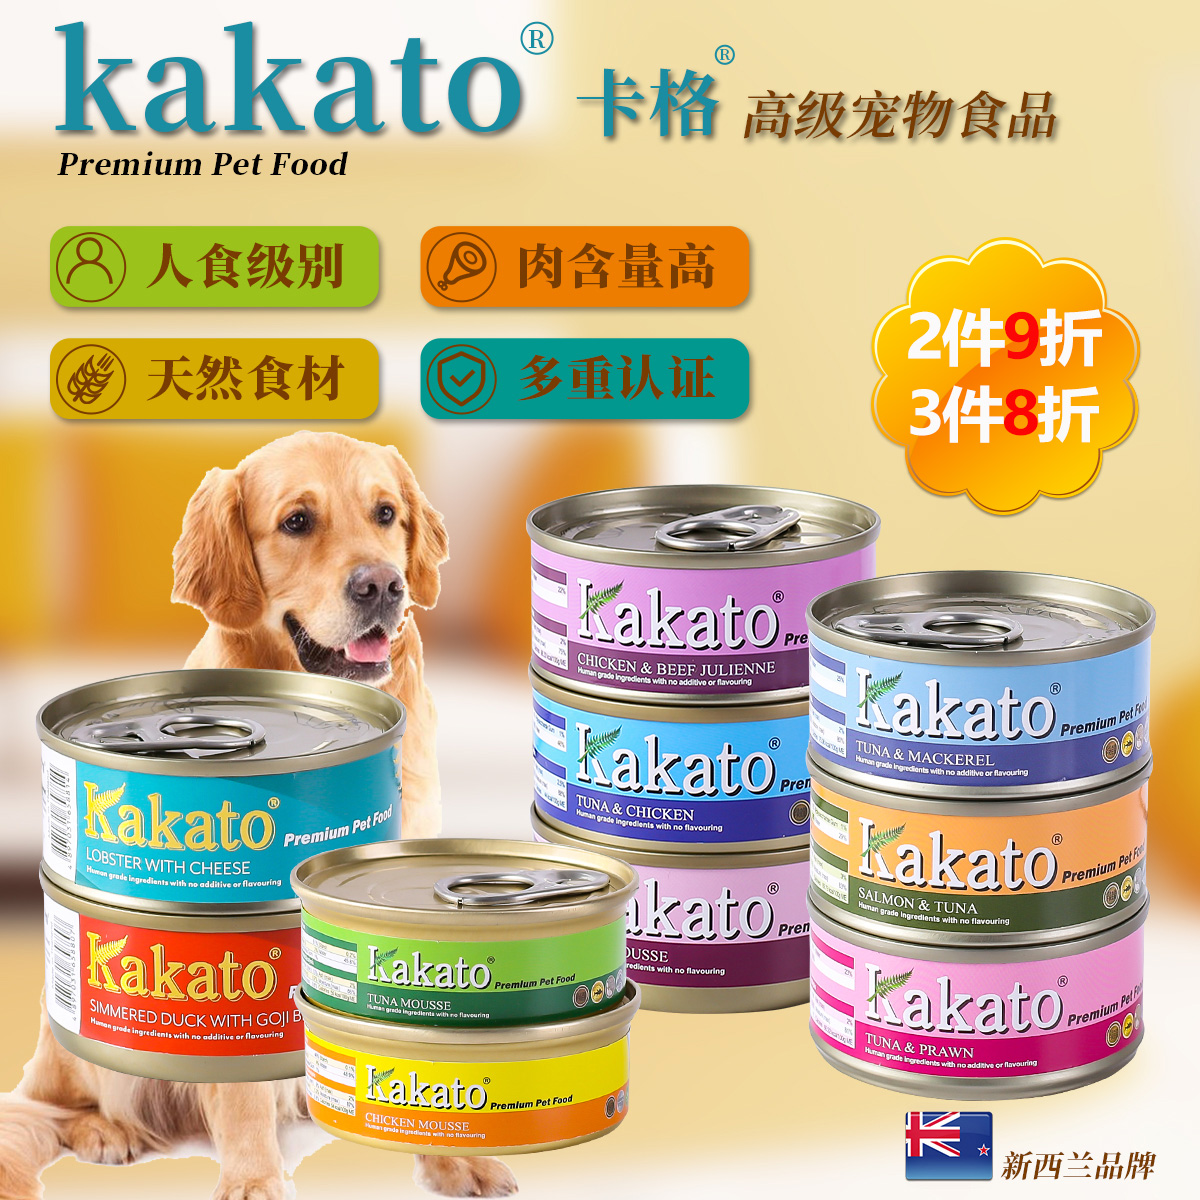 新西兰进口Kakato卡格猫罐头营养狗罐头湿粮主食罐头慕斯猫咪零食